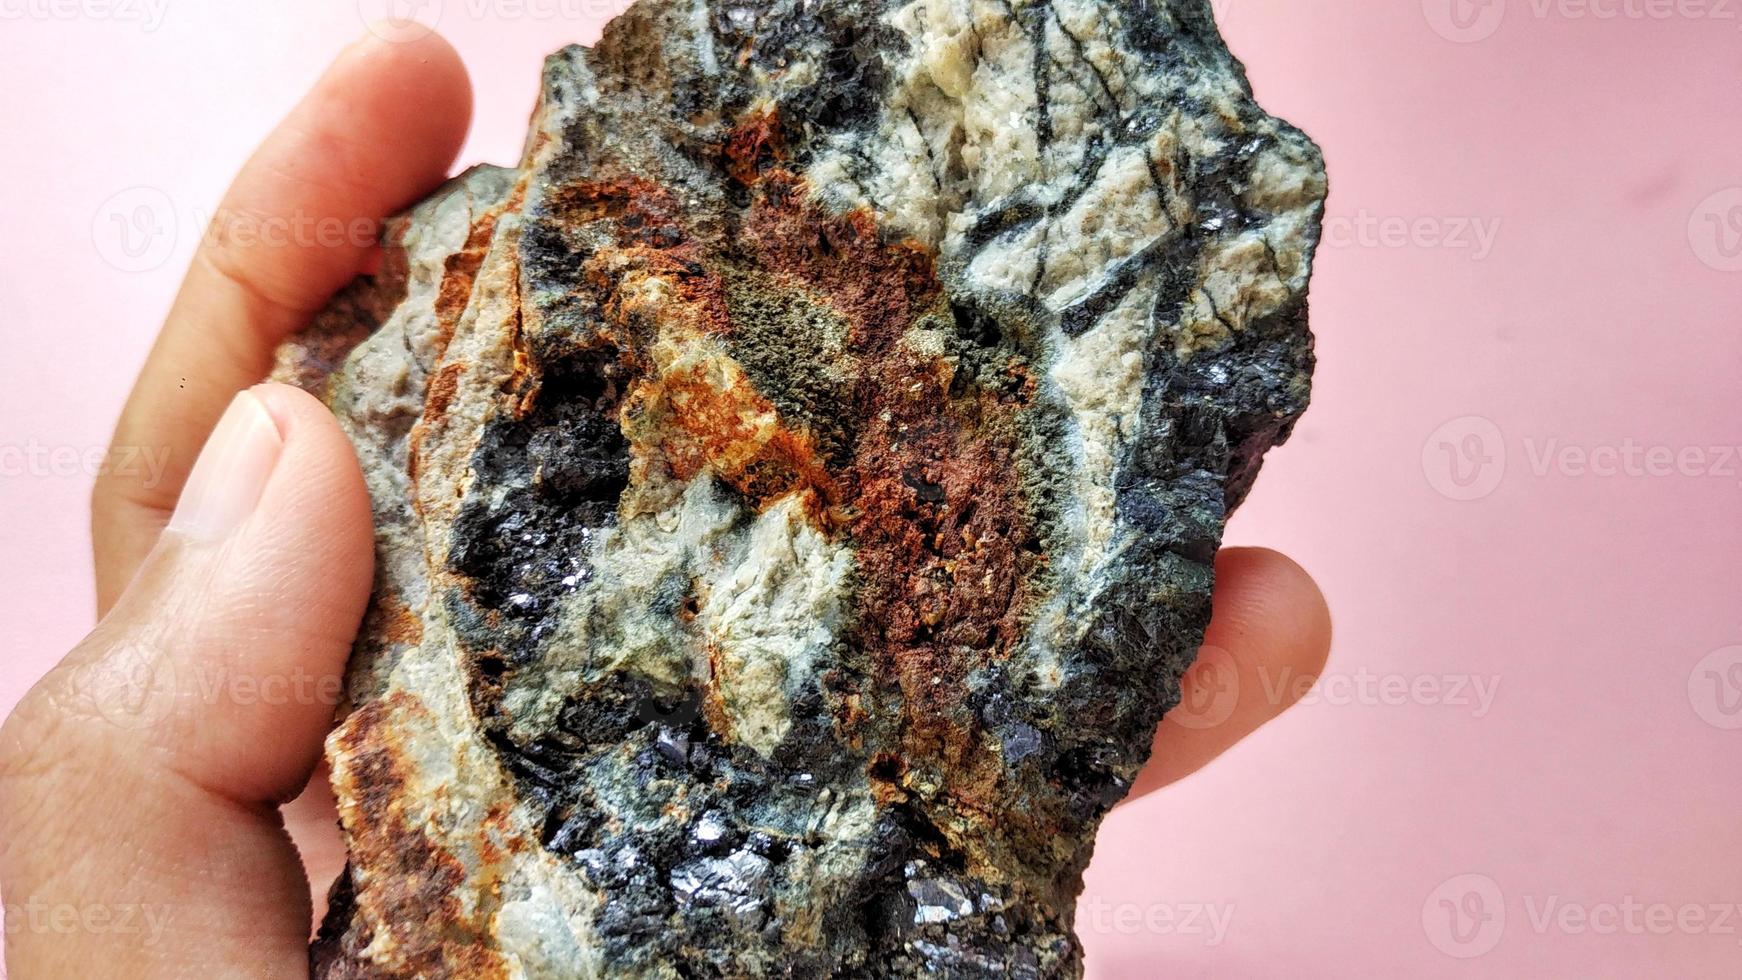 stollings andesiet veranderd in hydrothermale wijzigingszone, met aderkwarts, chloriet en glanzende zwarte pyrietmineralen, op een roze achtergrond. Indonesië, geologische verkenning. foto